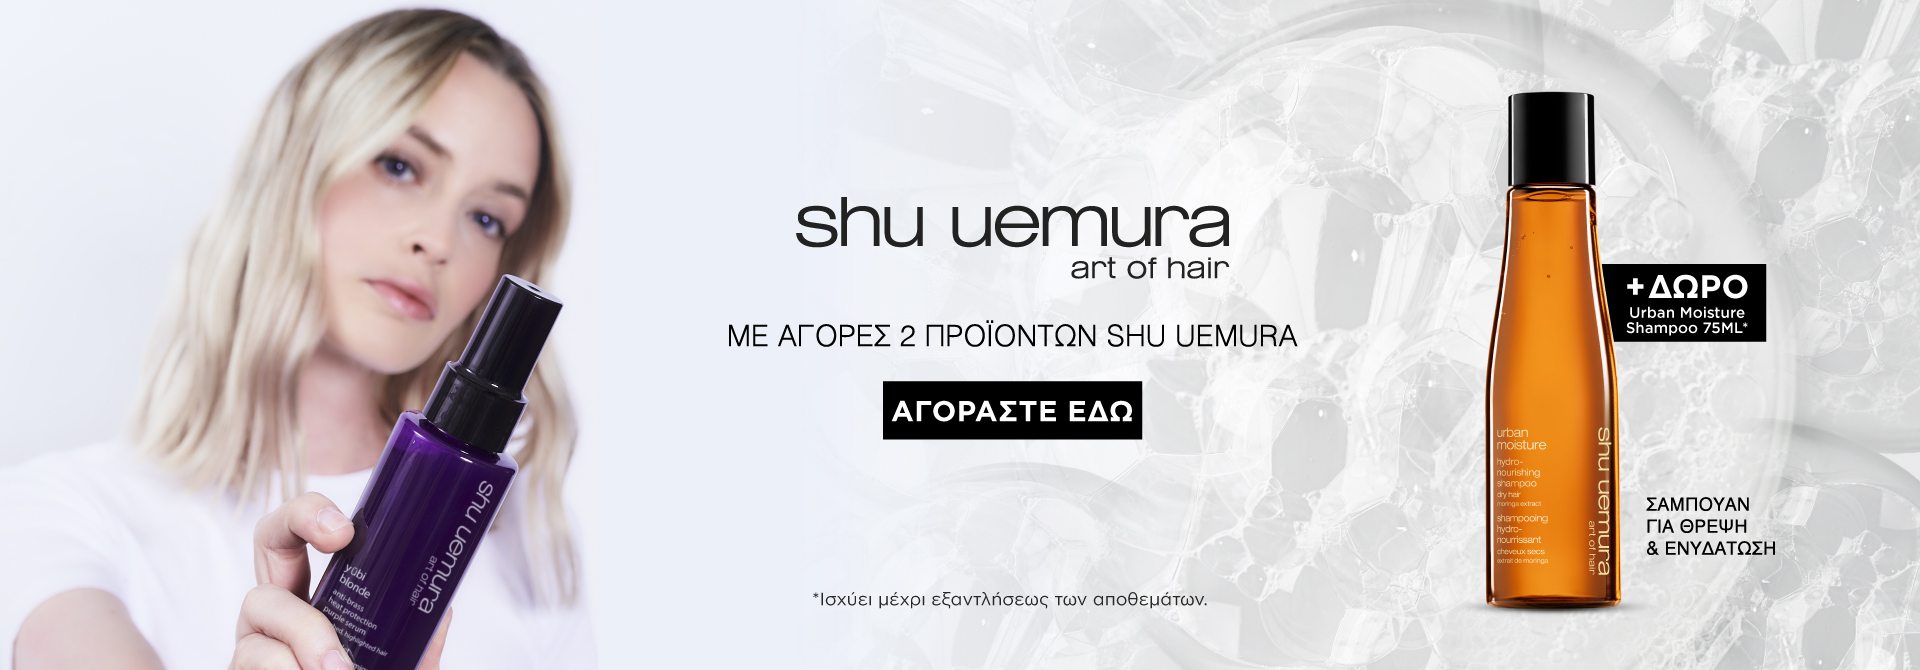 Shu Uemura Offer